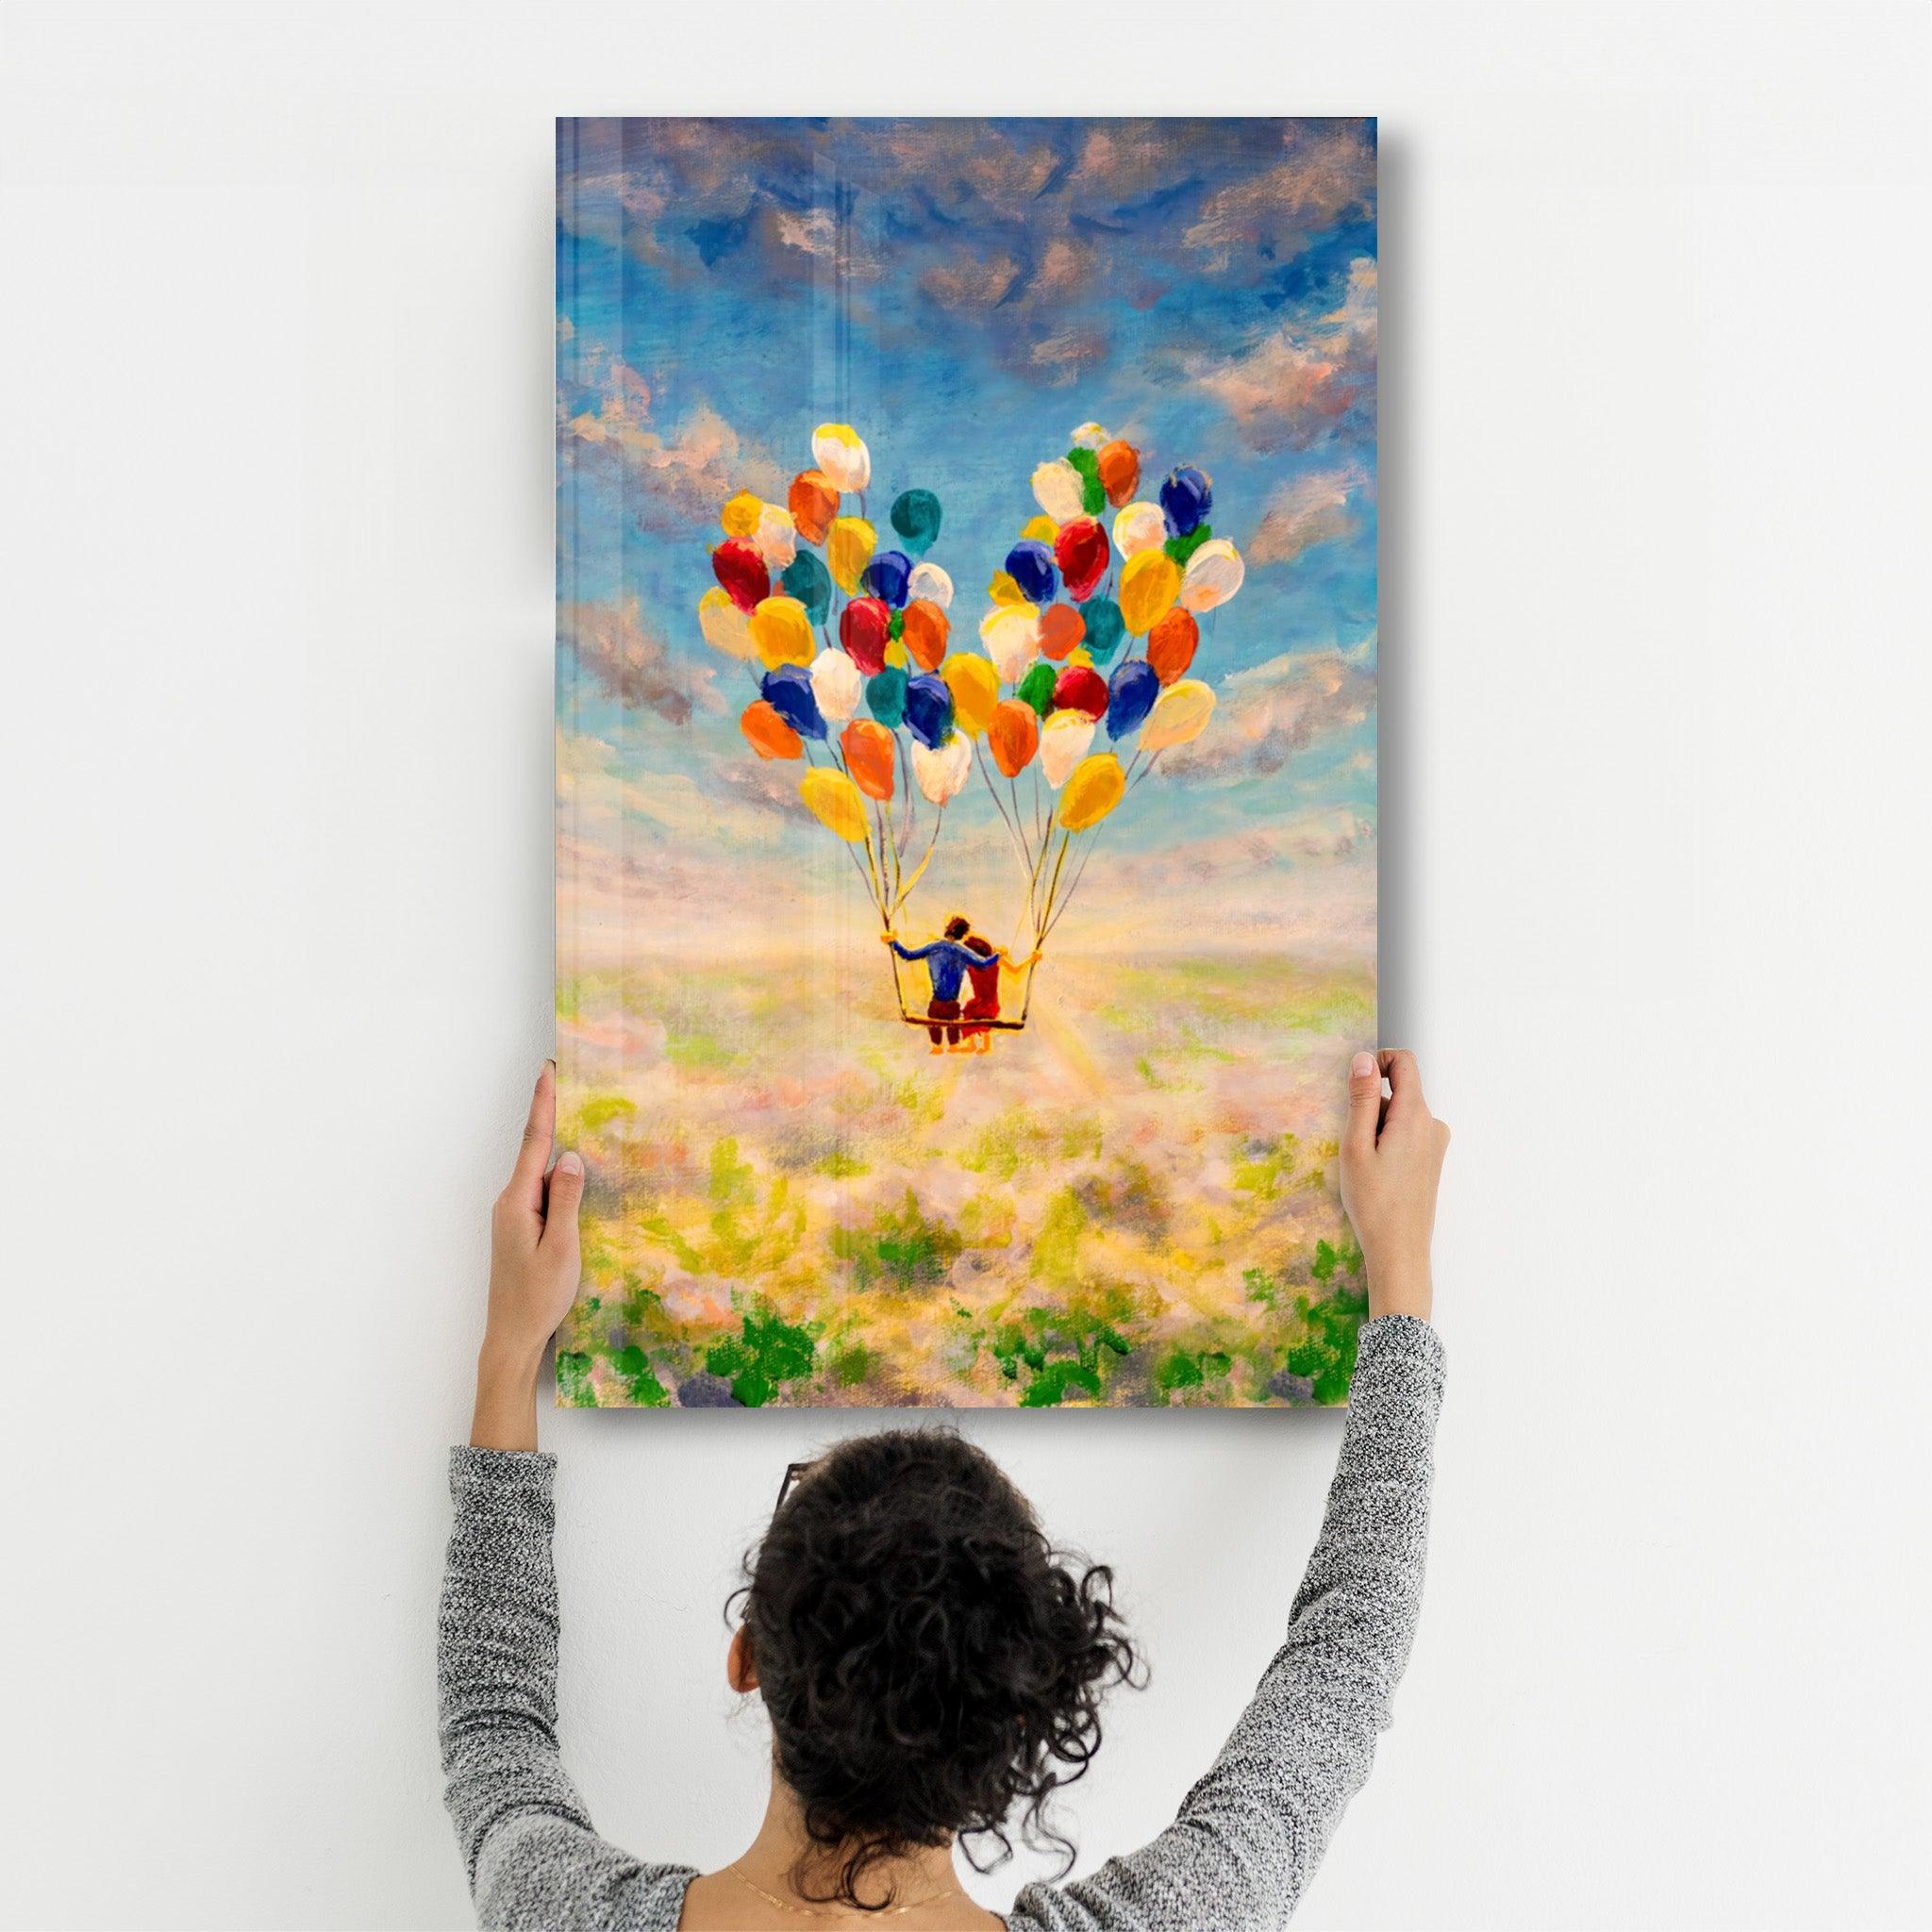 Abstract Colorful Baloons | Glass Wall Art - ArtDesigna Glass Printing Wall Art